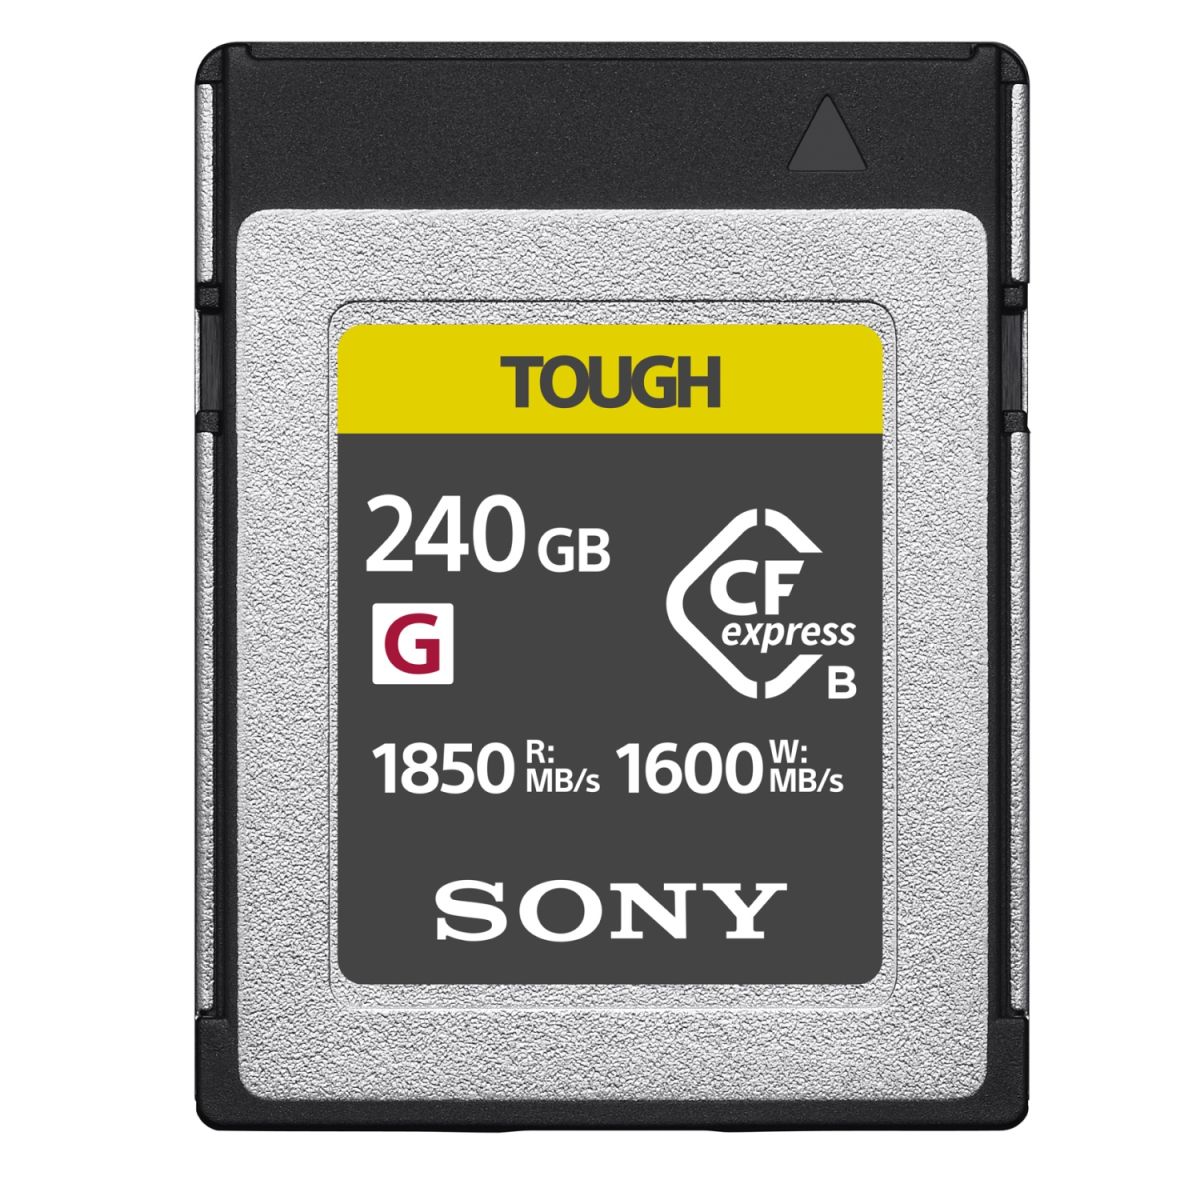 Sony 240GB CFexpress Type B TOUGH